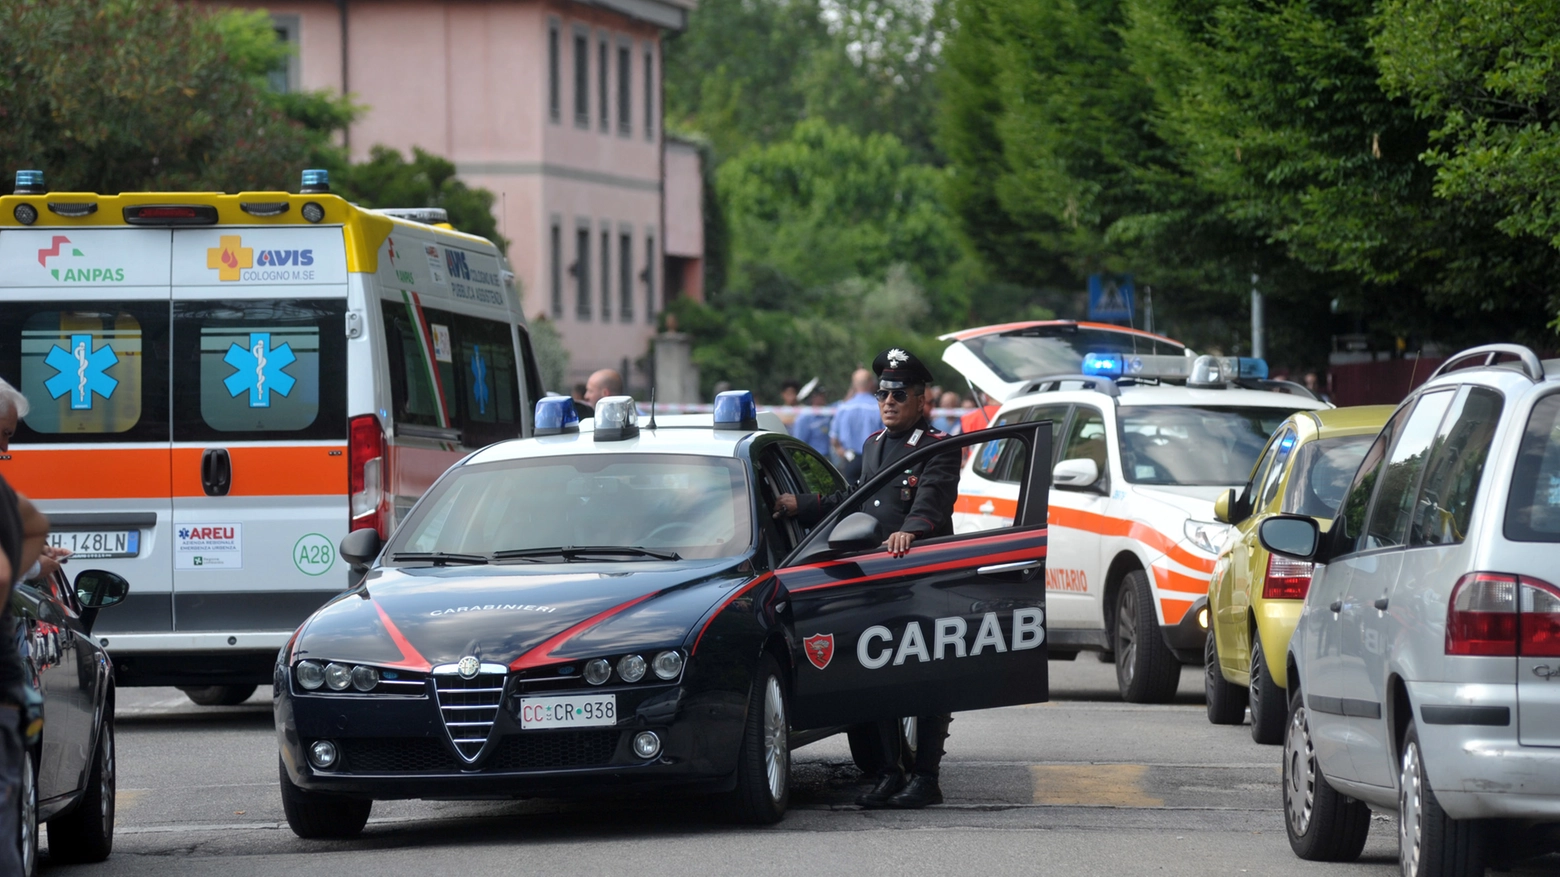 Carabinieri e ambulanze sono intervenuti